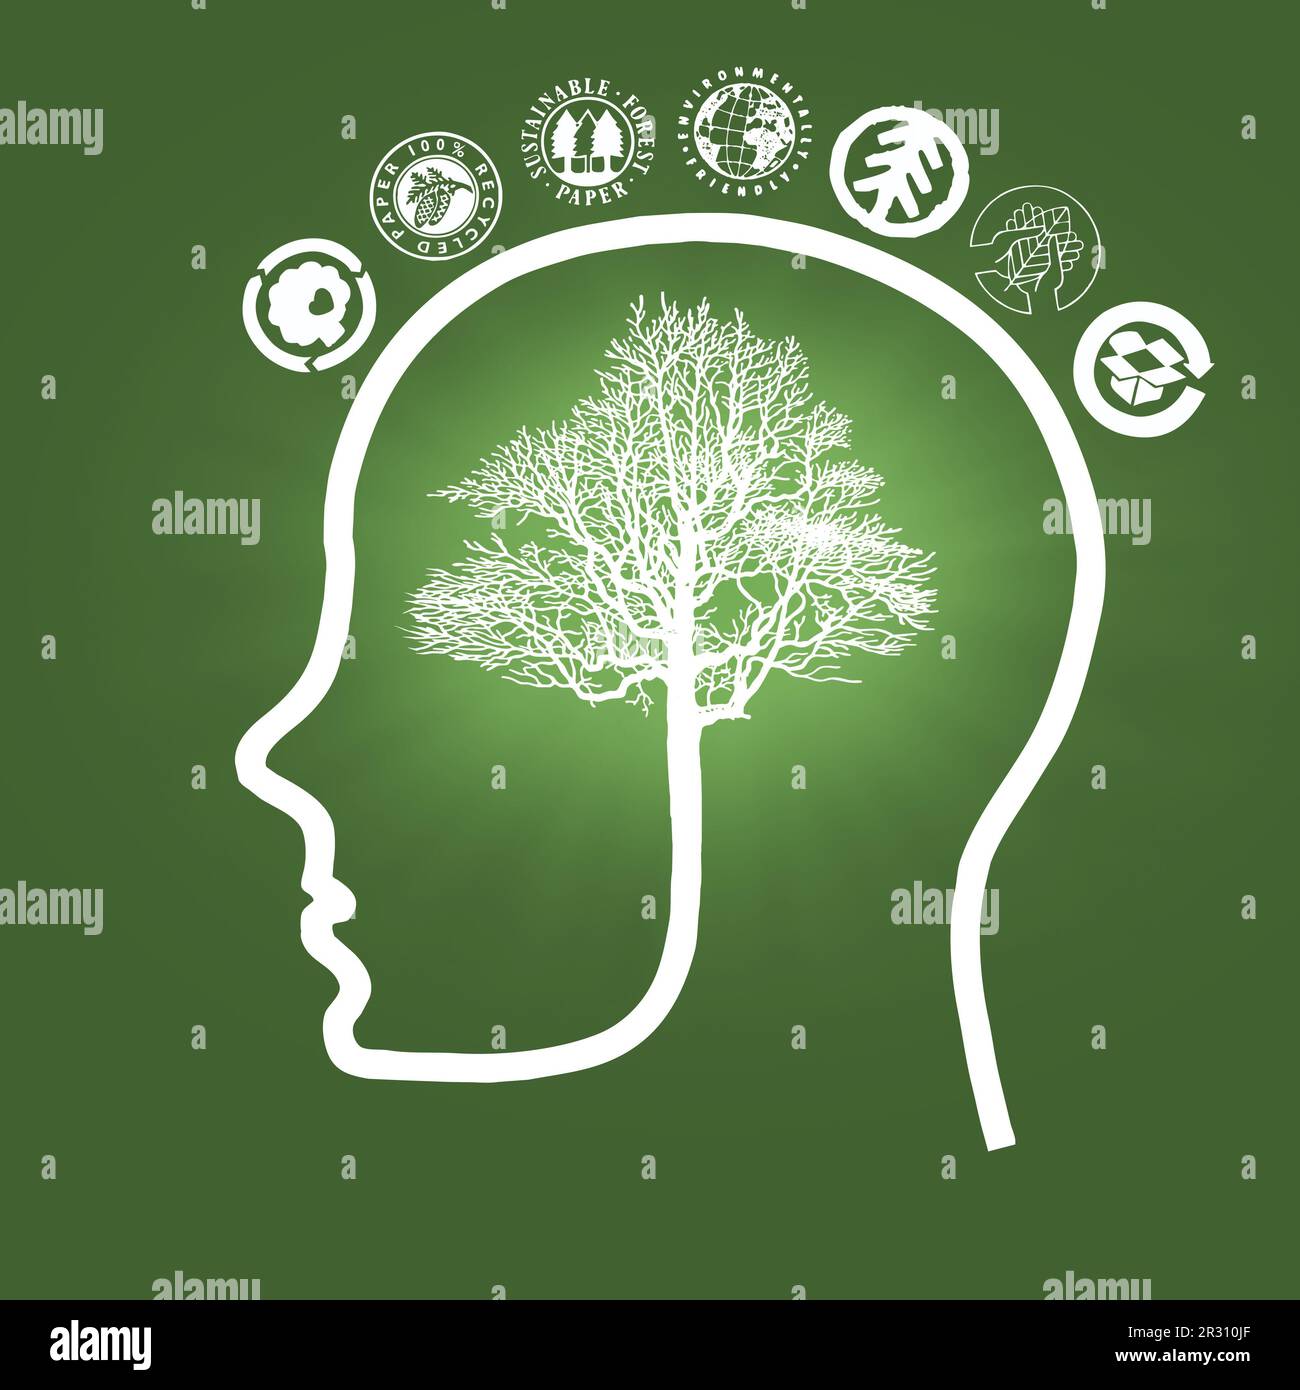 Illustrazione del contorno della testa umana con cervello a forma di albero circondato da pittogrammi ecologici - concetto di consapevolezza ambientale Foto Stock